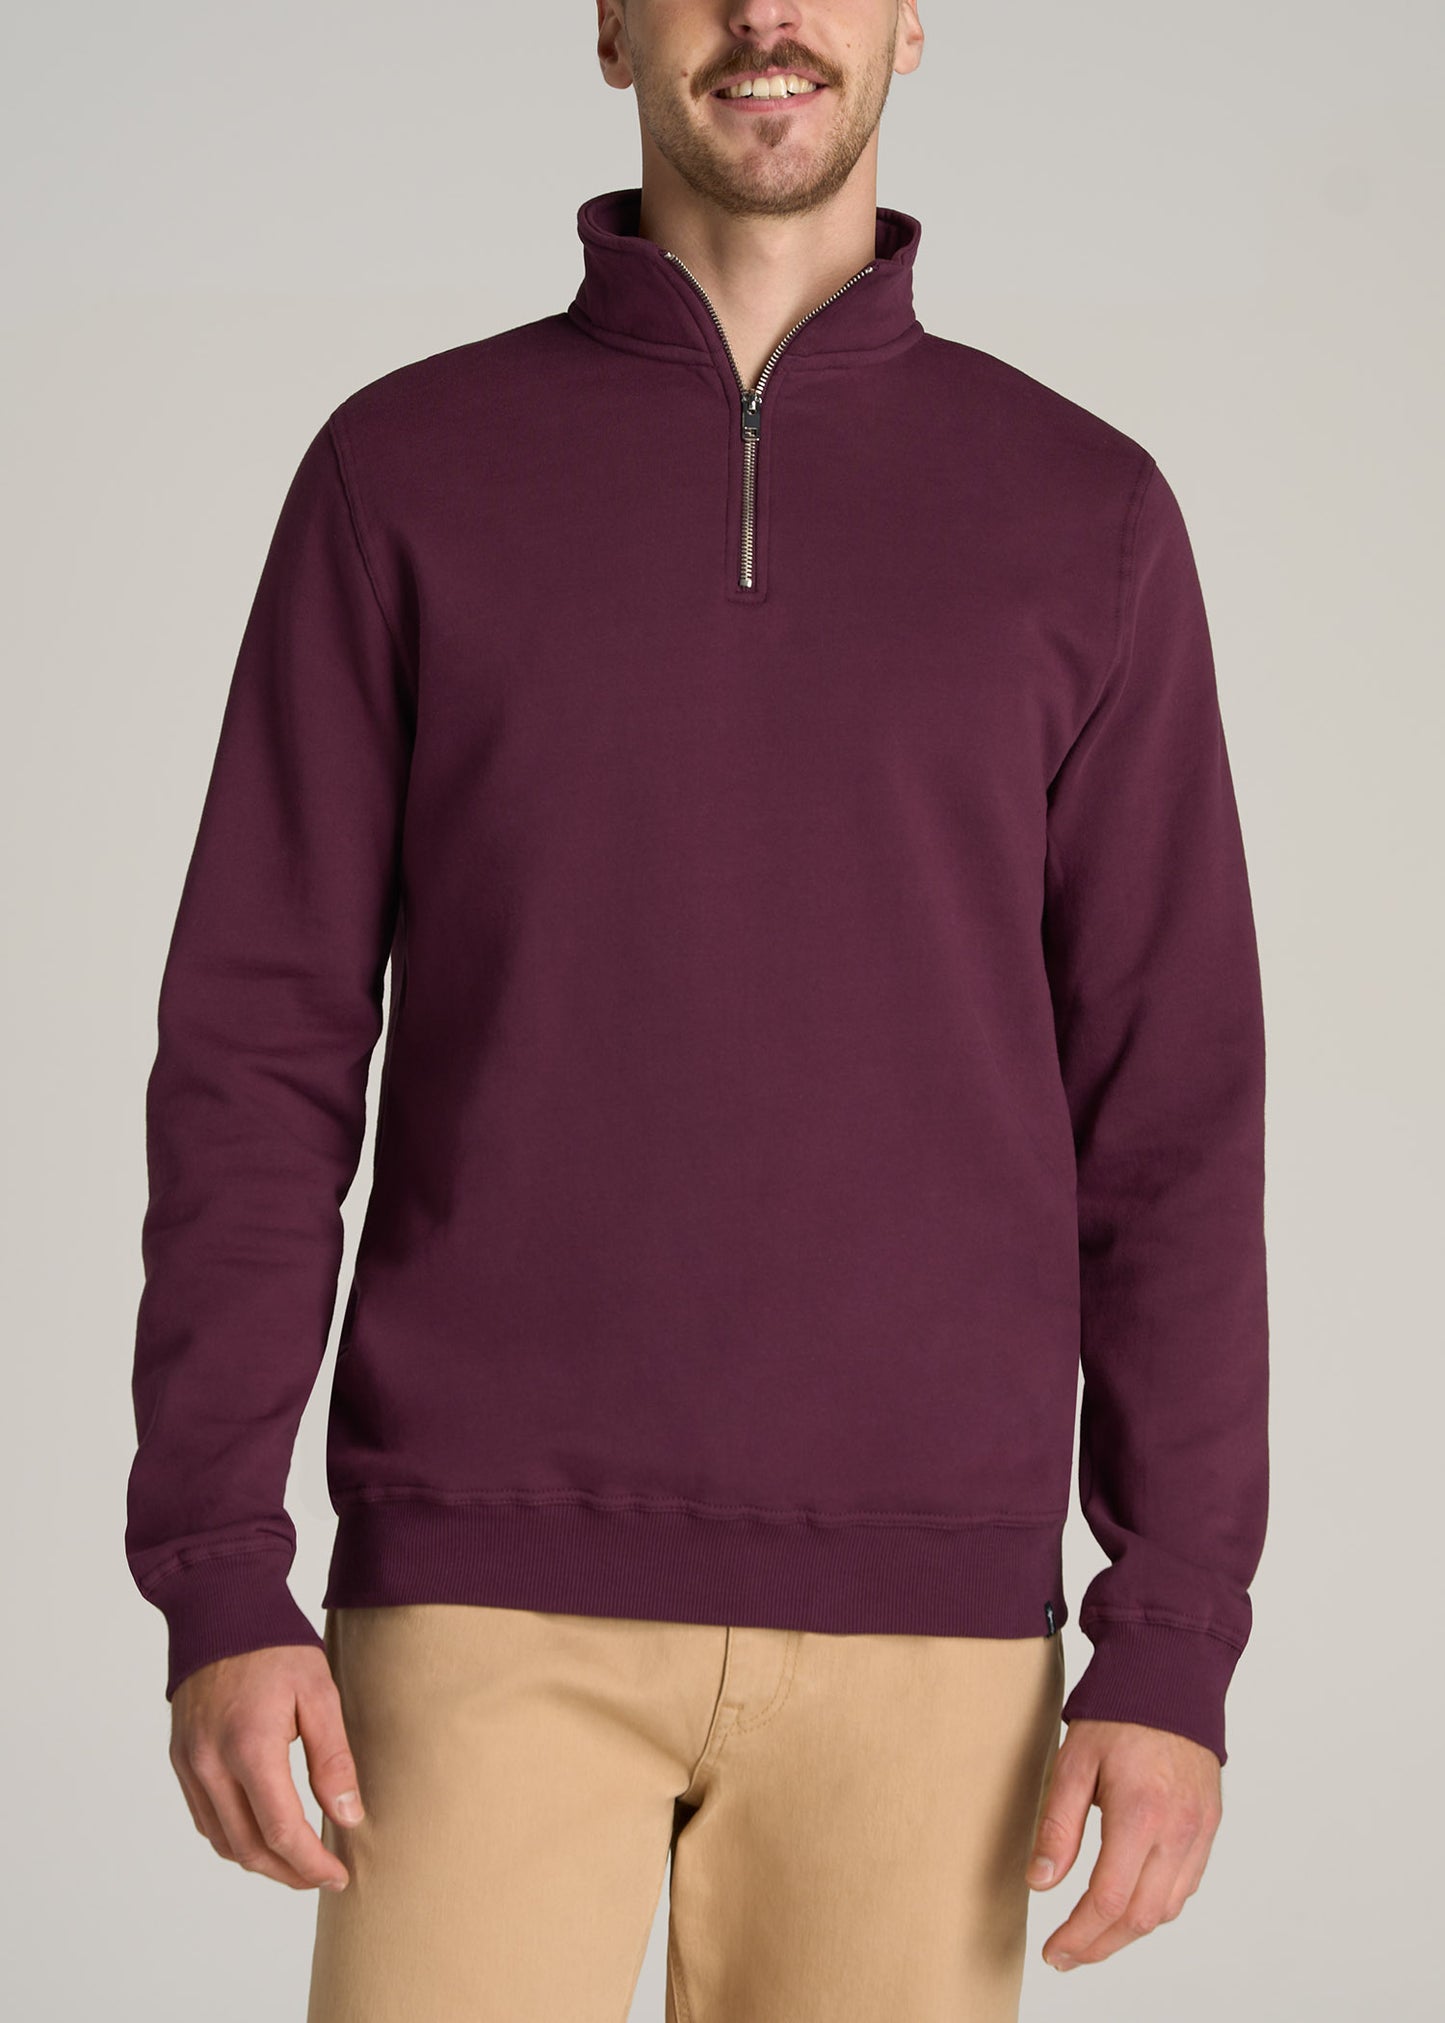 Quarter Zip Sweatshirt Men's: Tall Wearever Fleece Sweatshirt